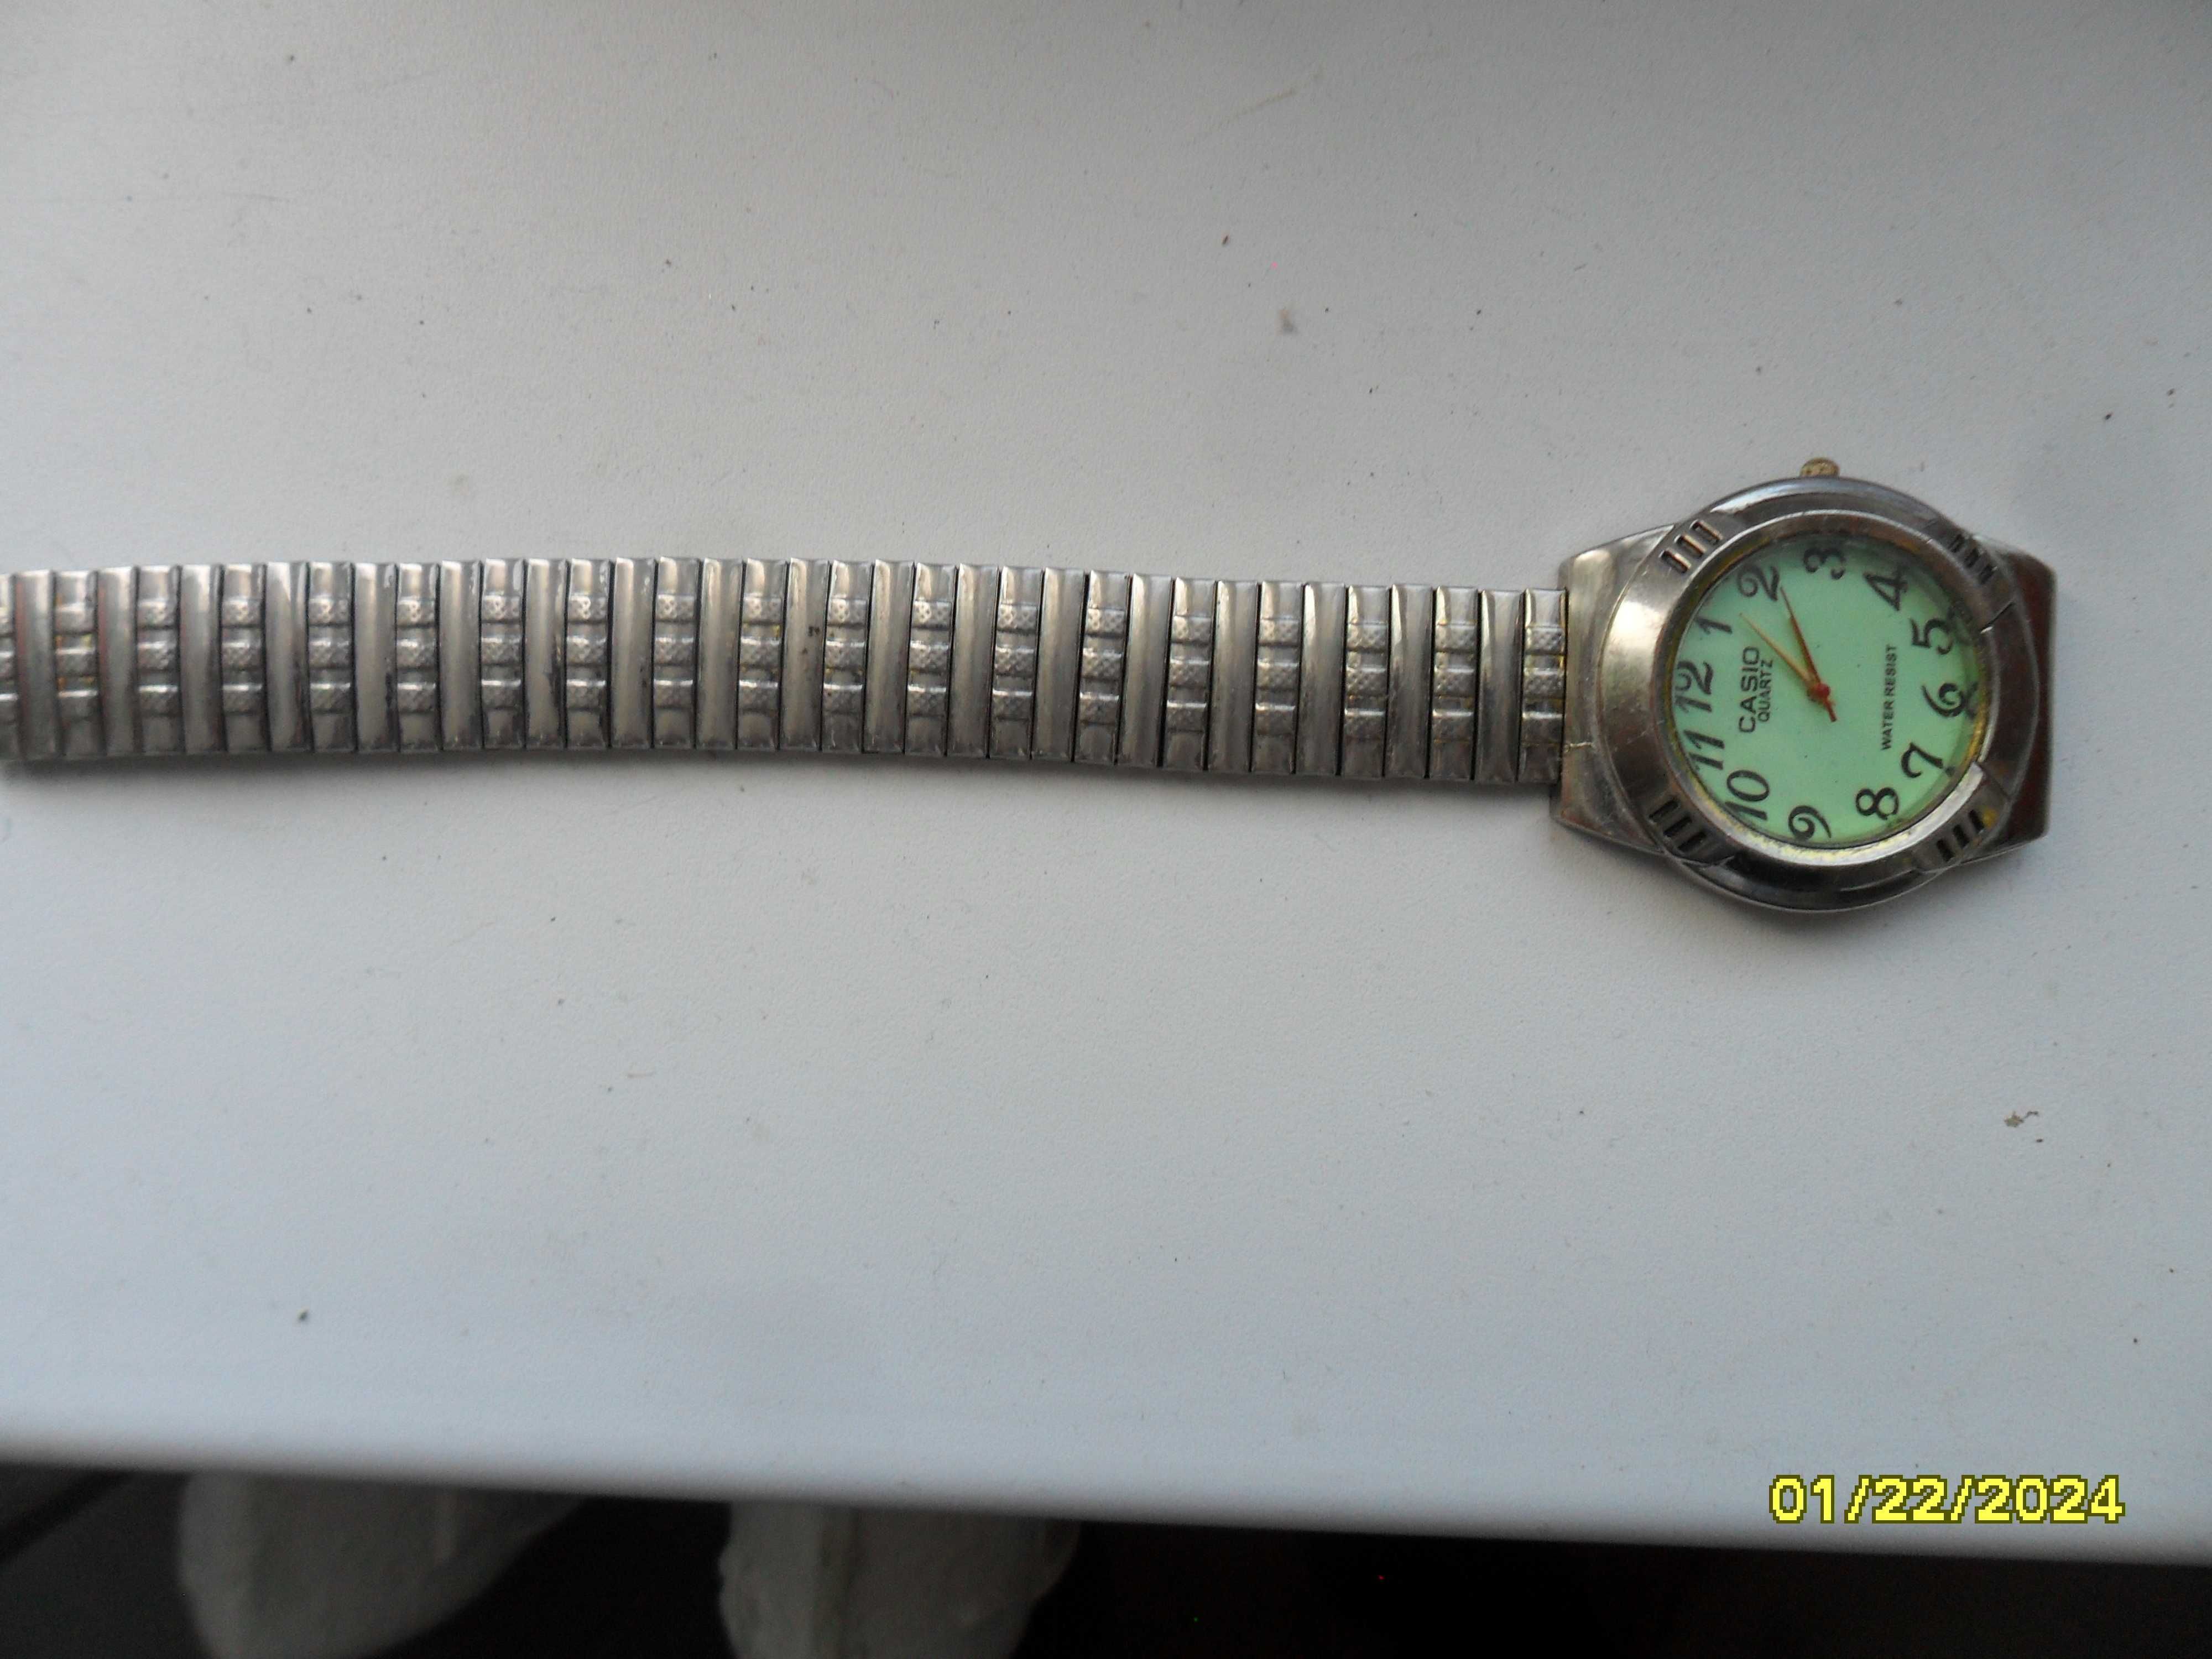 Наручные часы с фосфористым циферблатом фирмы CASIO.